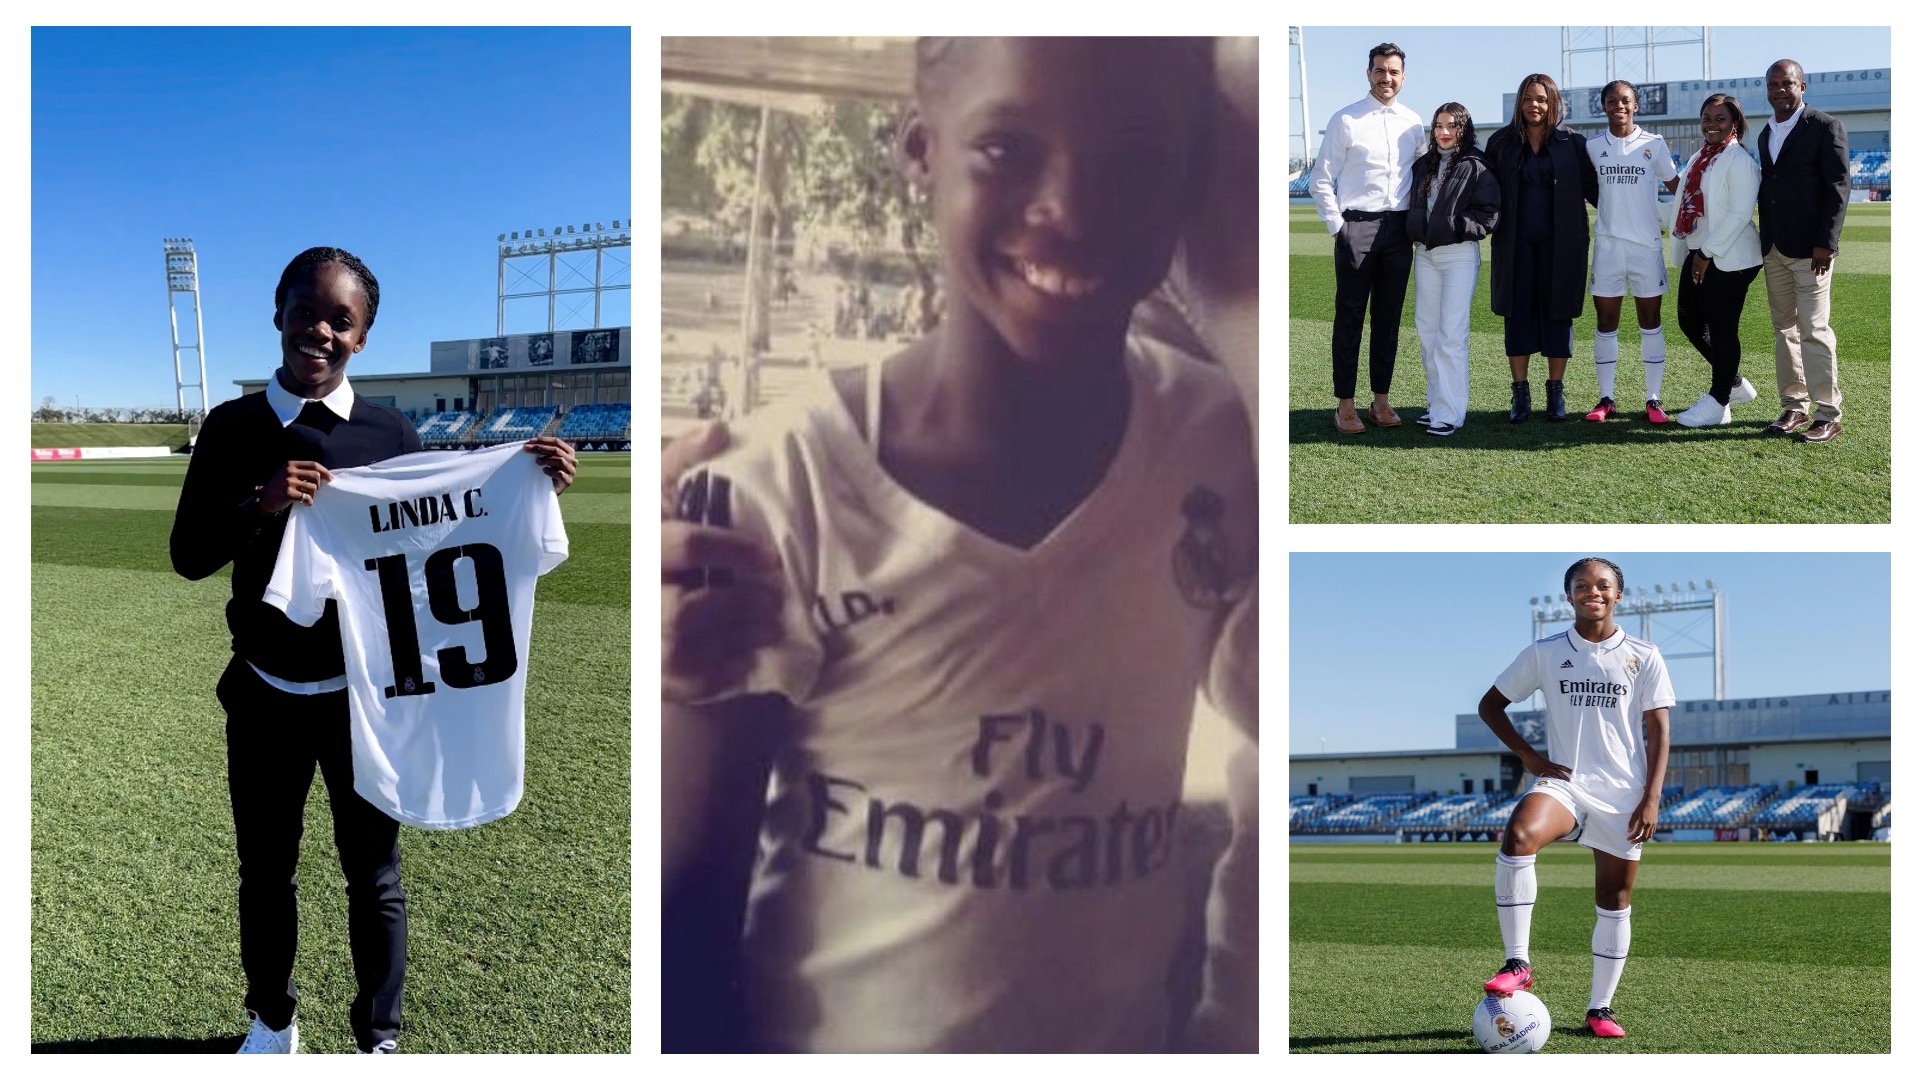 Linda Caicedo llenó de elogios y agradecimientos a su familia y al Real Madrid